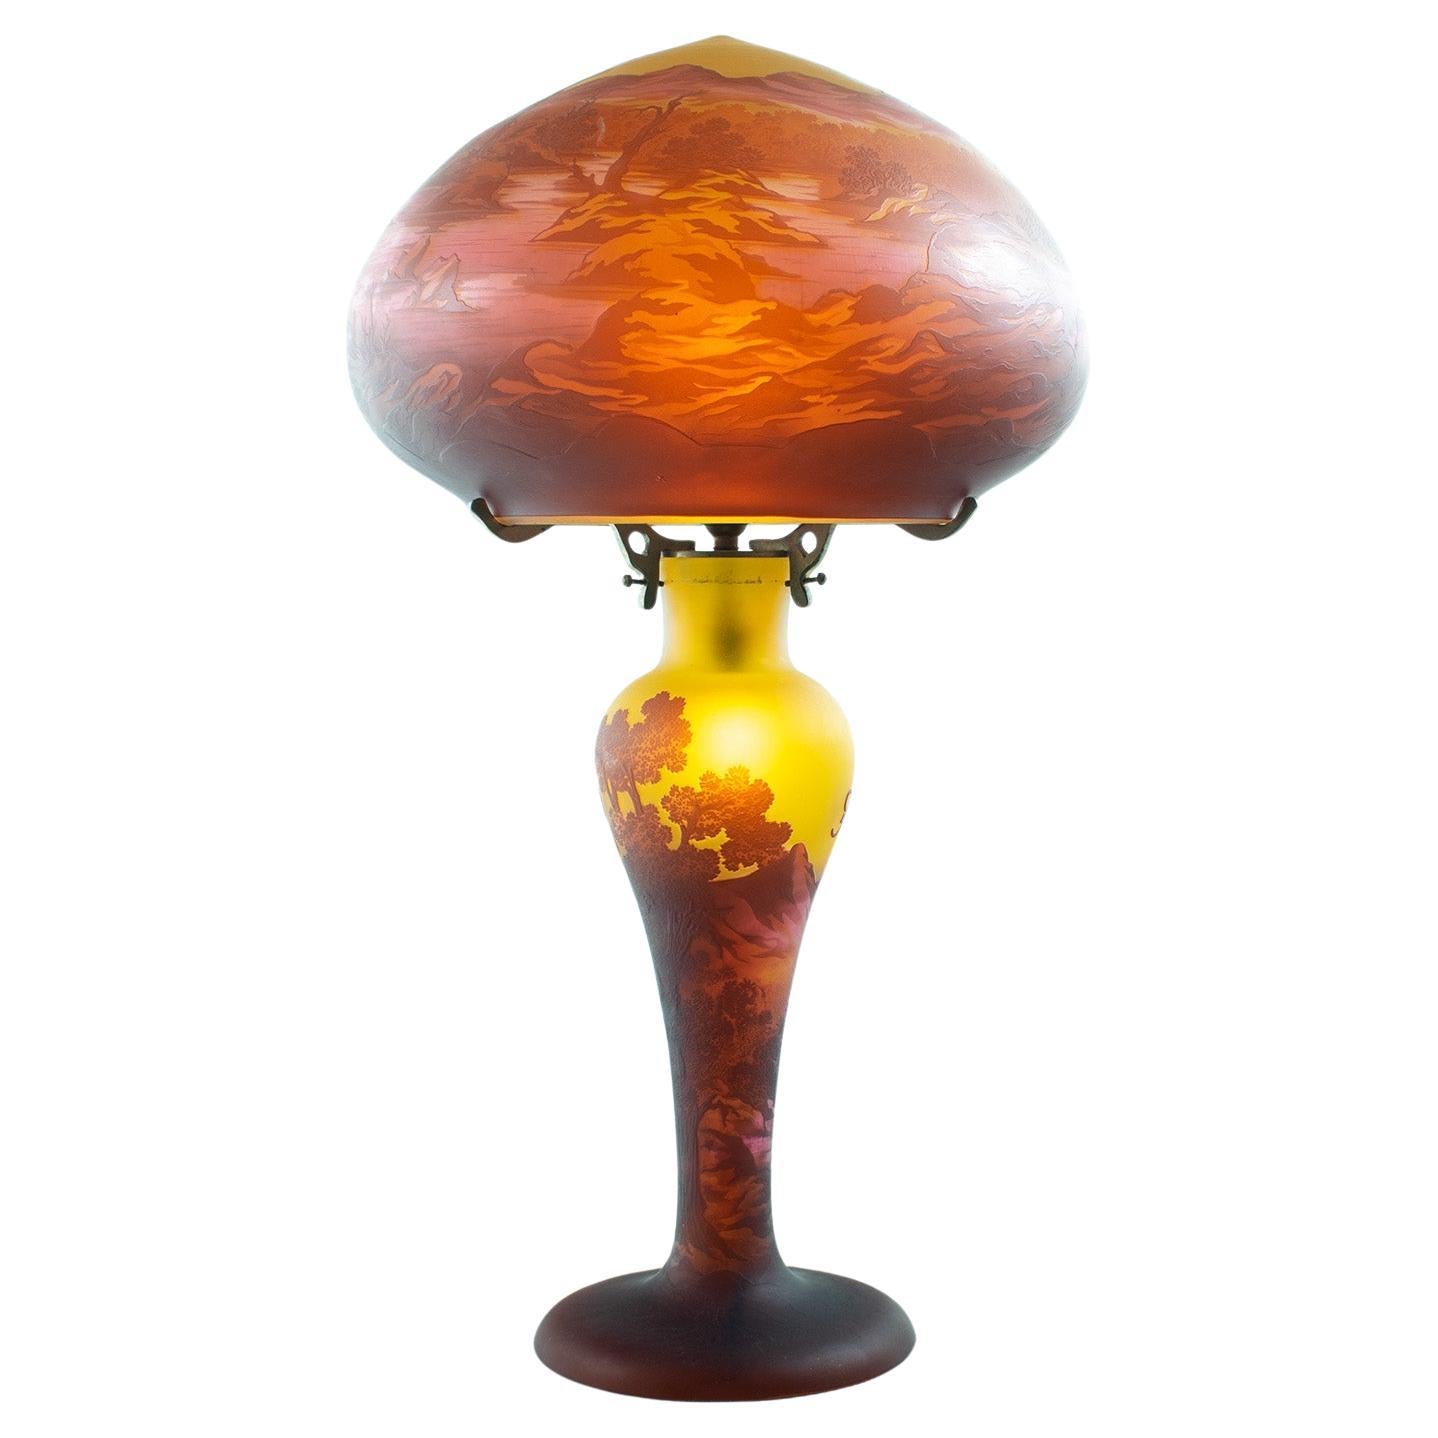 Gallè Tip - Beeindruckende große ART NOUVEAU MUSHROOM LAMPE aus mehrschichtigem Glas